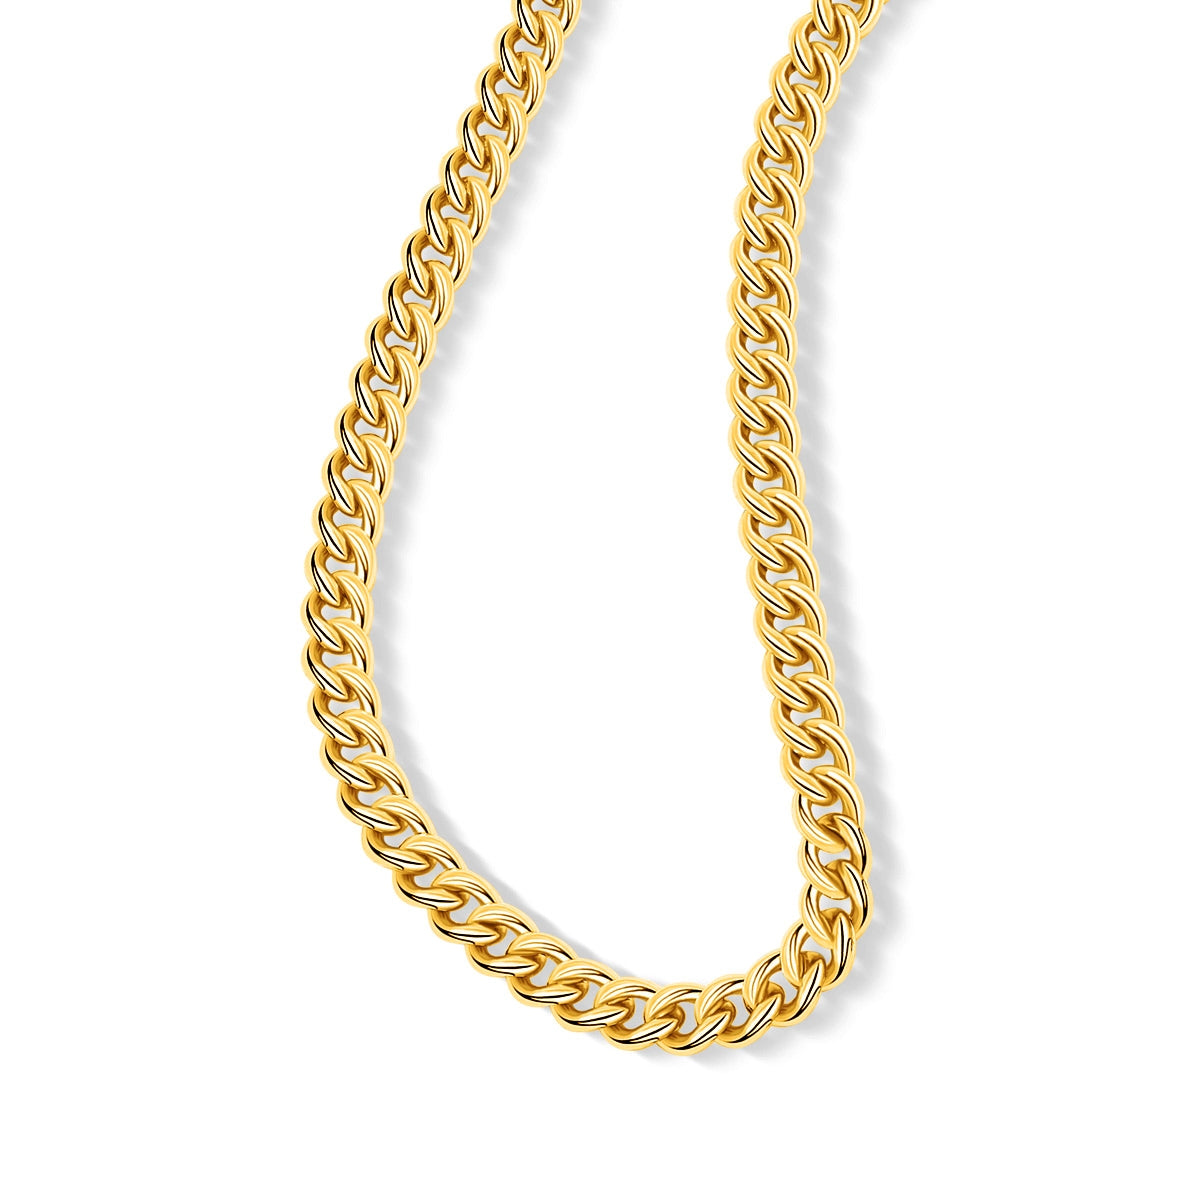 Unique simple gold chain necklace